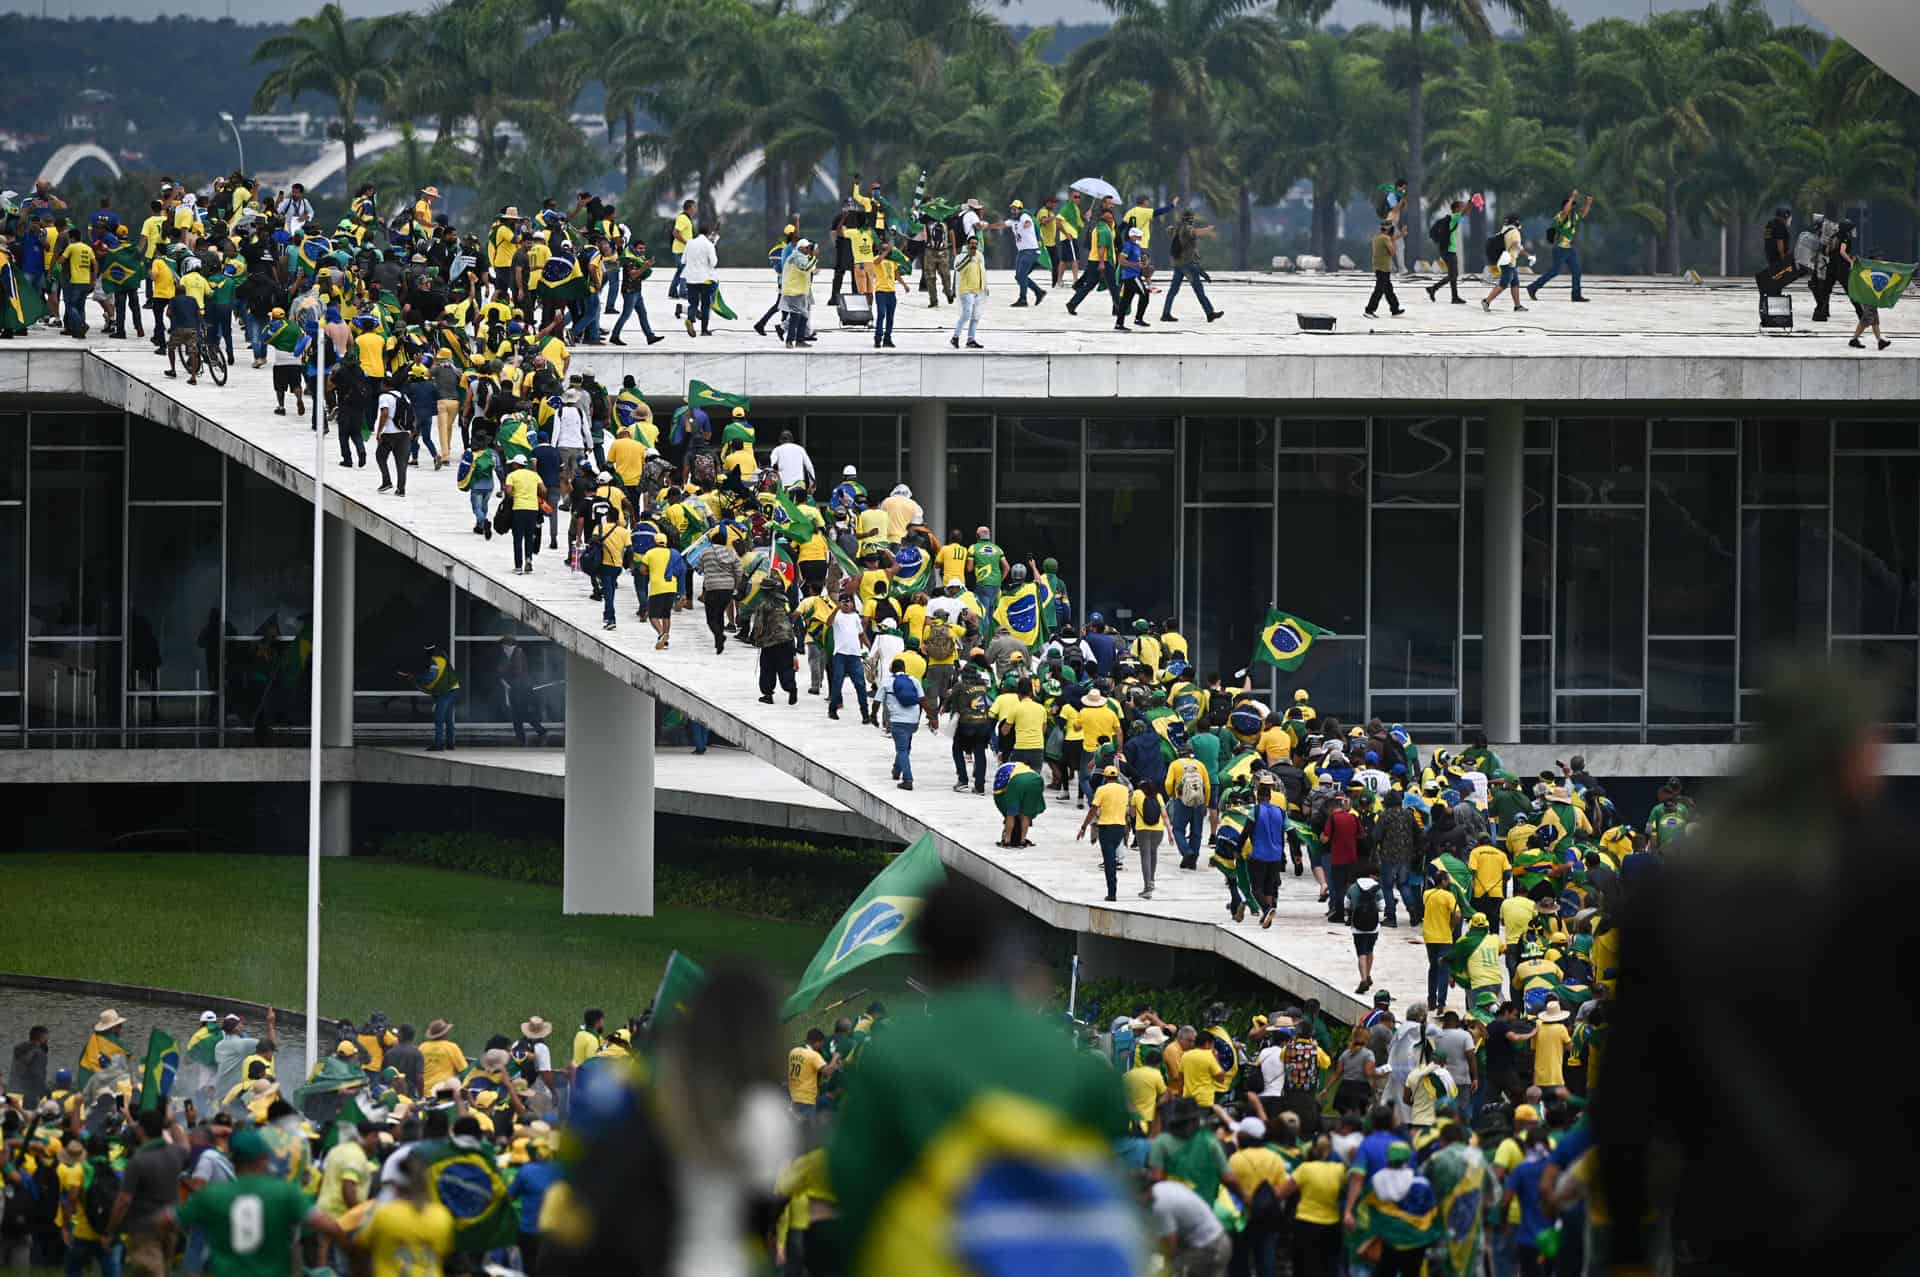 Manifestantes contra los resultados electorales y el gobierno del recién posesionado presidente Lula da Silva invadieron el Congreso Nacional, el Supremo Tribunal Federal y el Palacio del Planalto, sede de la Presidencia de la República este domingo, en Brasilia (Brasil).